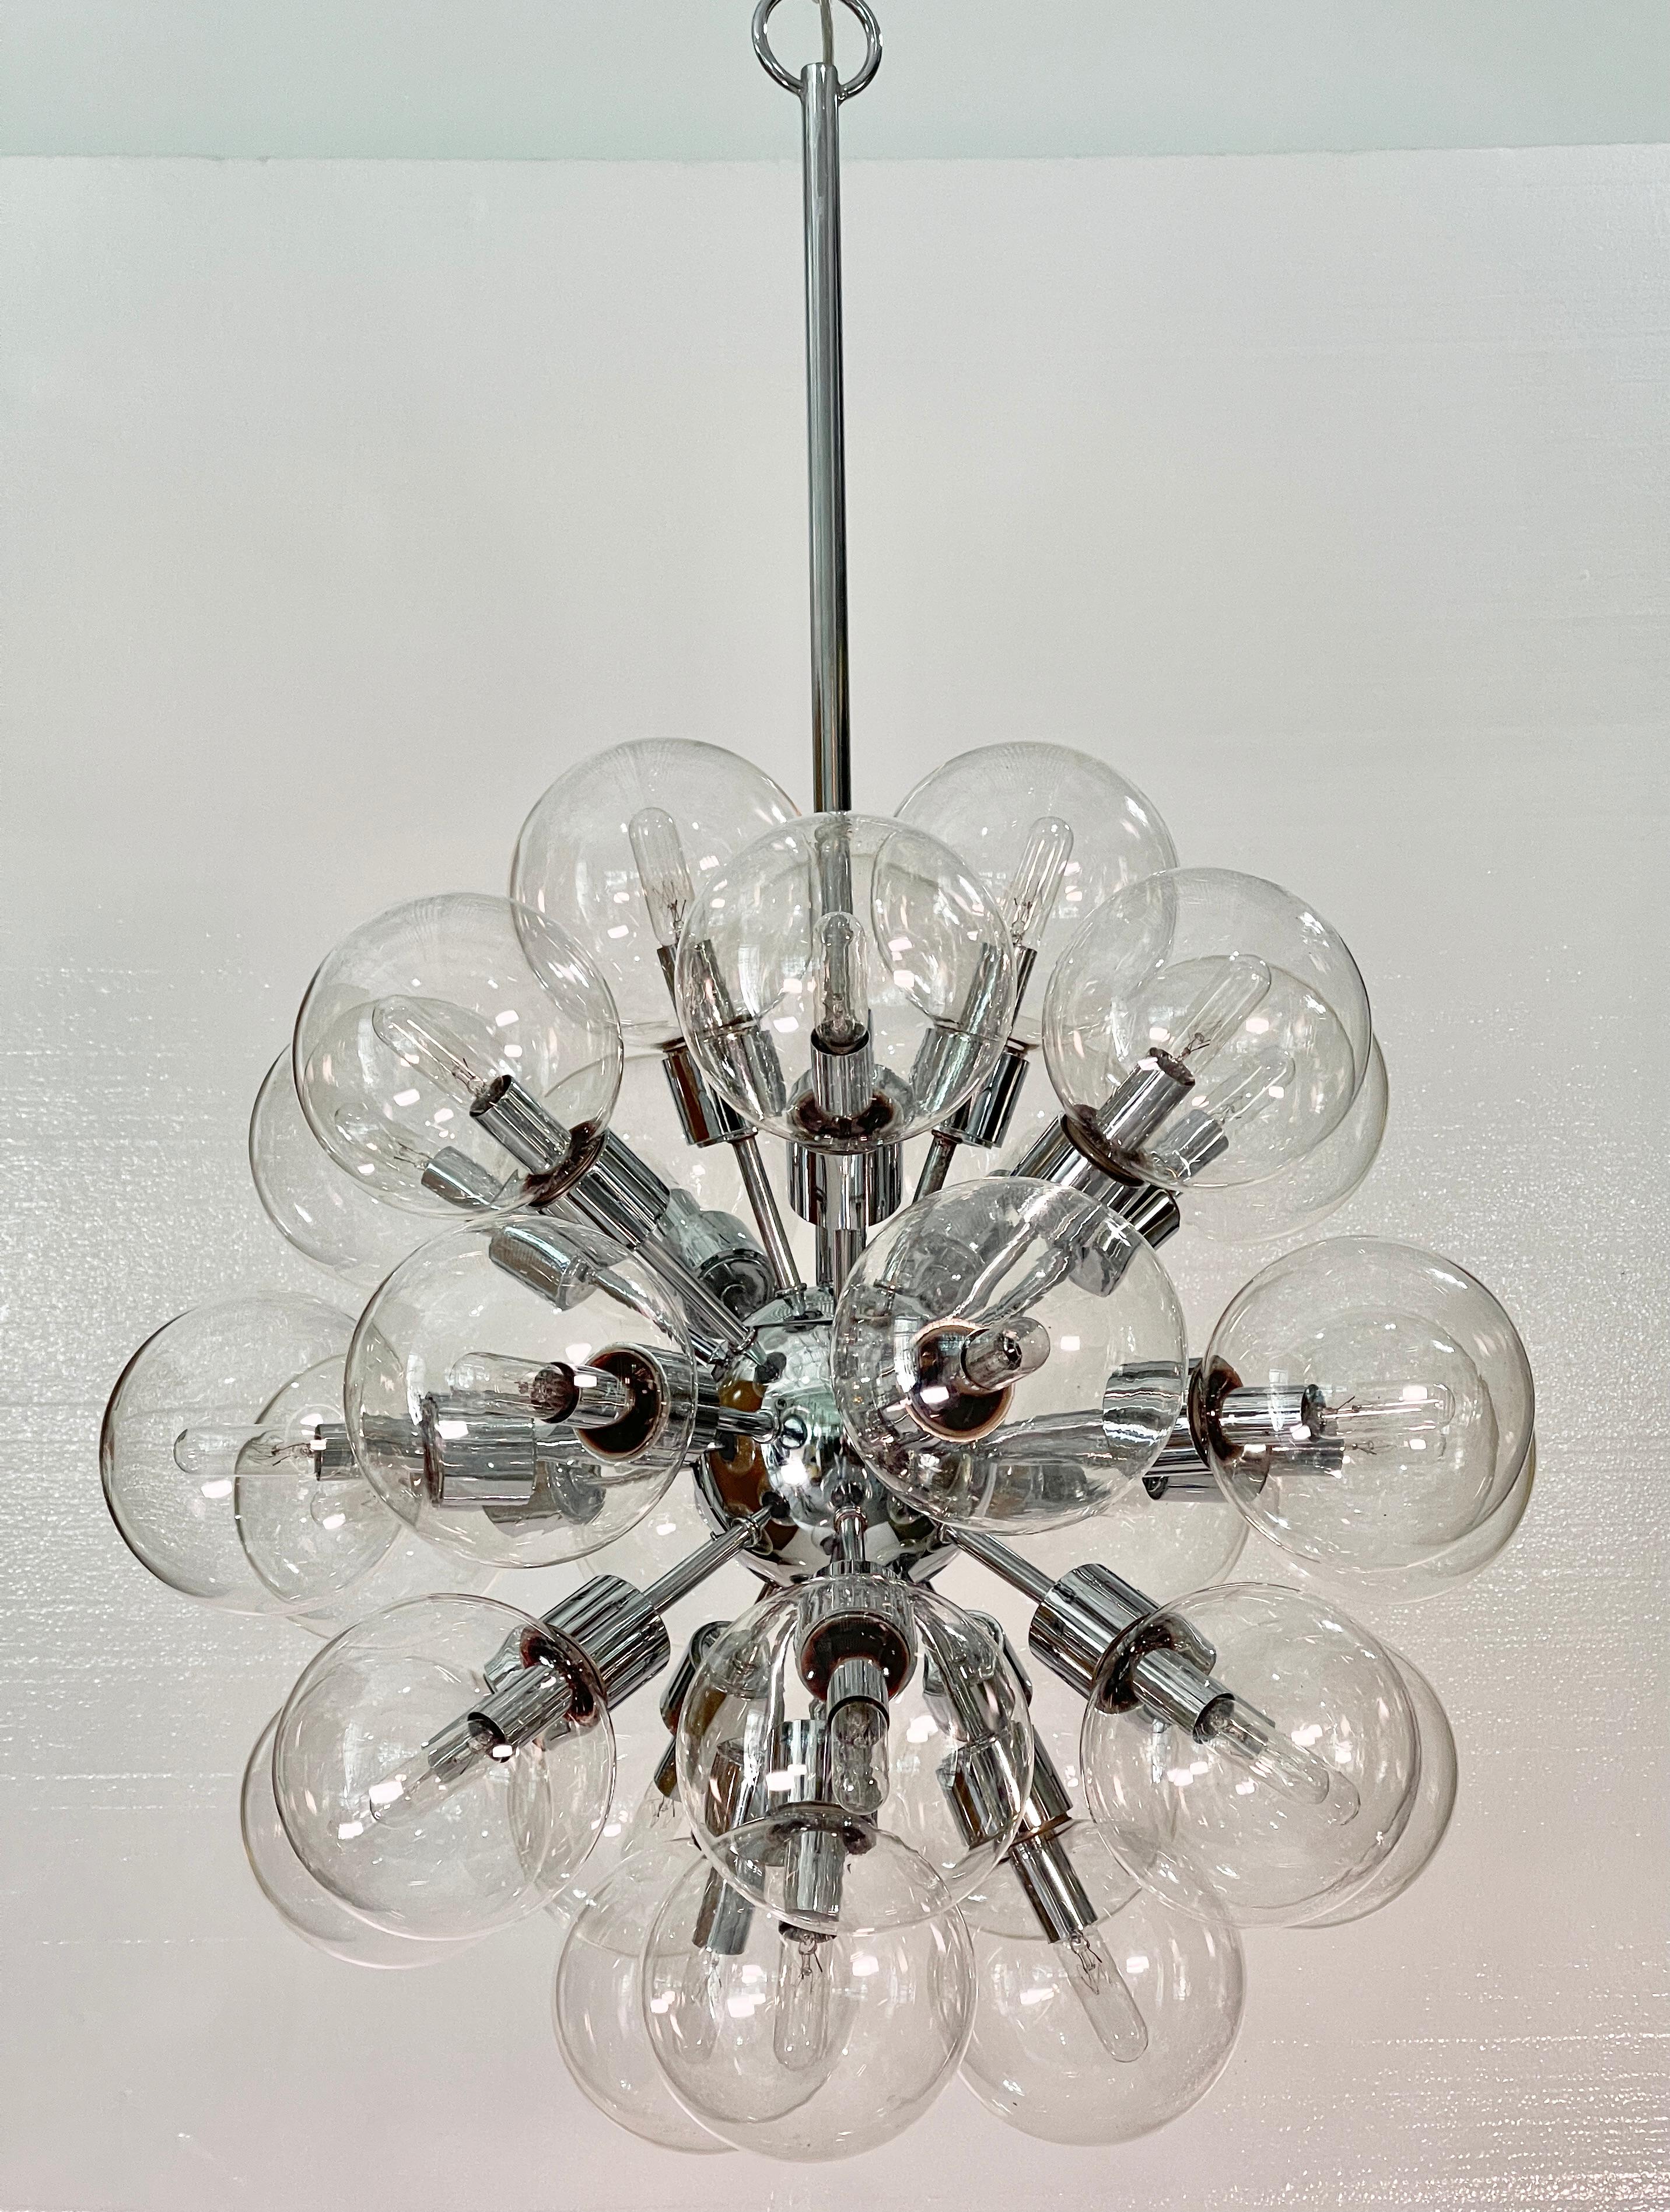 De la collection Space Crystal conçue par Motoko Ishii, le savant savant de l'éclairage architectural plusieurs fois récompensé, créée en 1972 pour la firme ouest-allemande Staff Leuchten.... 
Ce lustre spoutnik chromé et certifié UL a été produit